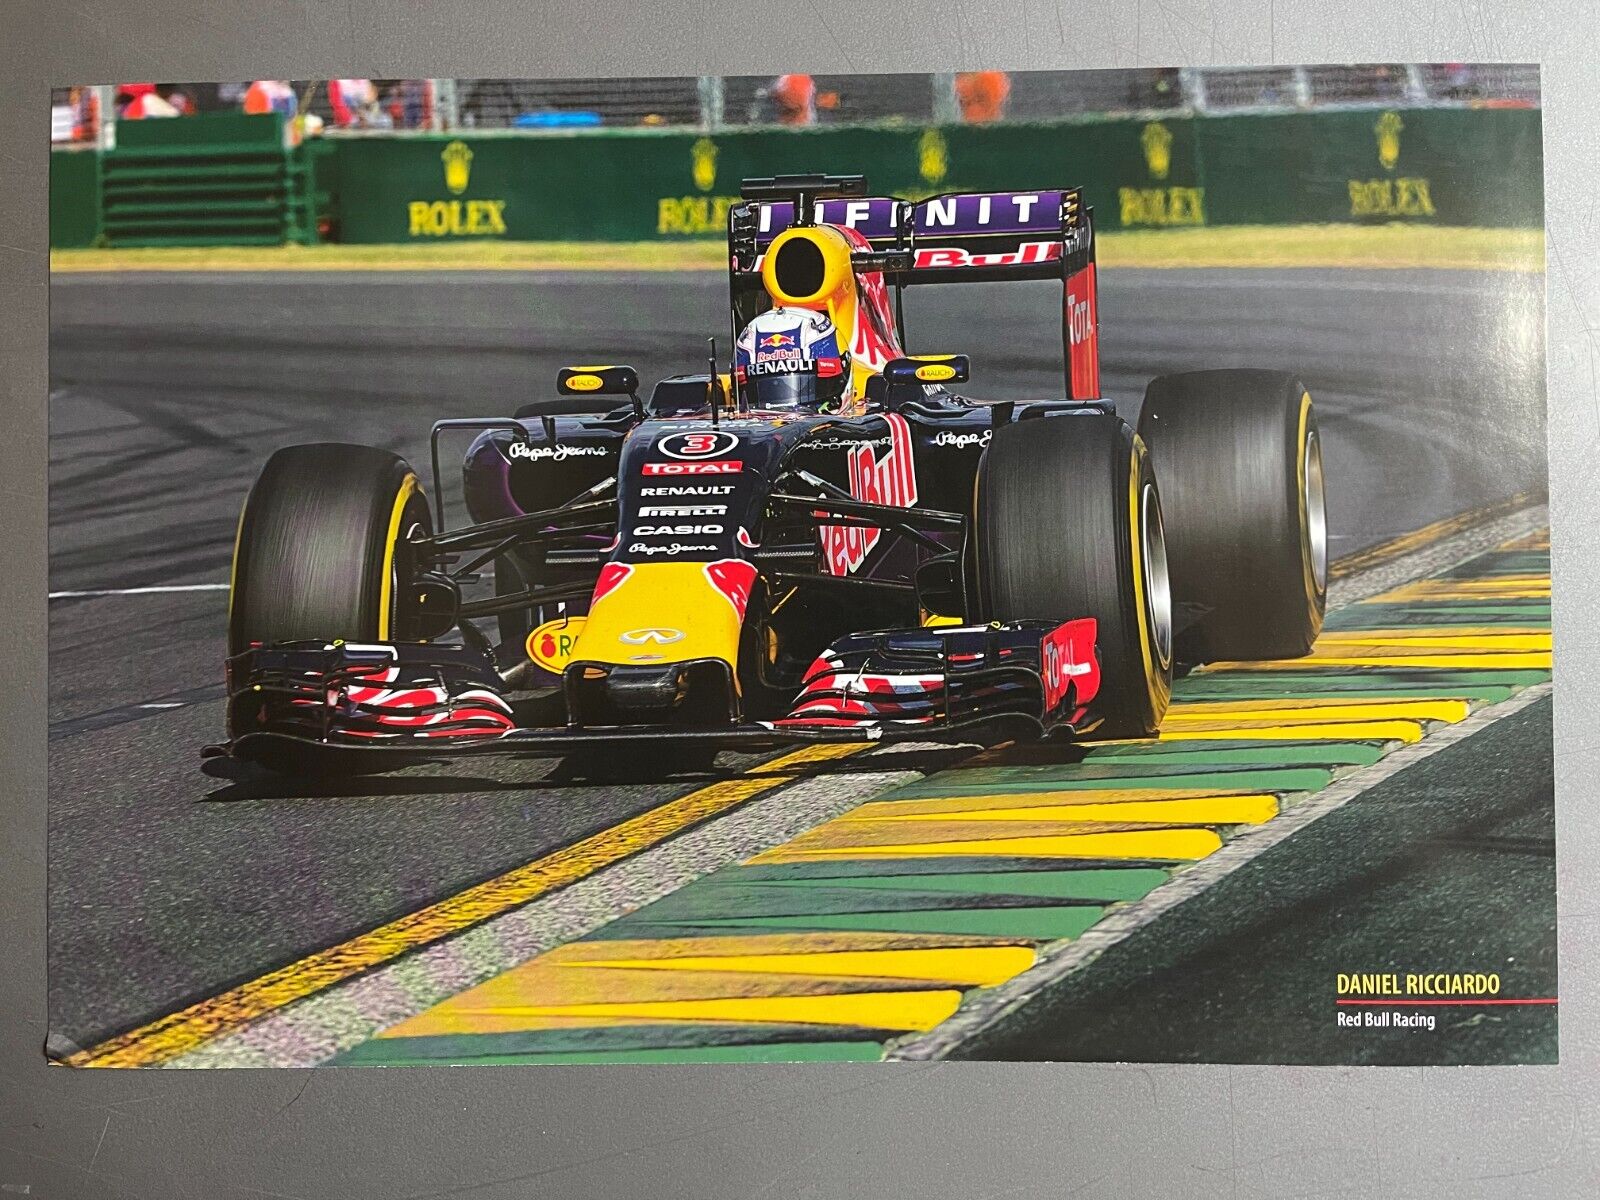 2016 Daniel Ricciardo Red Bull Formula 1 Print, Picture, Poster, Rare!! Awesome